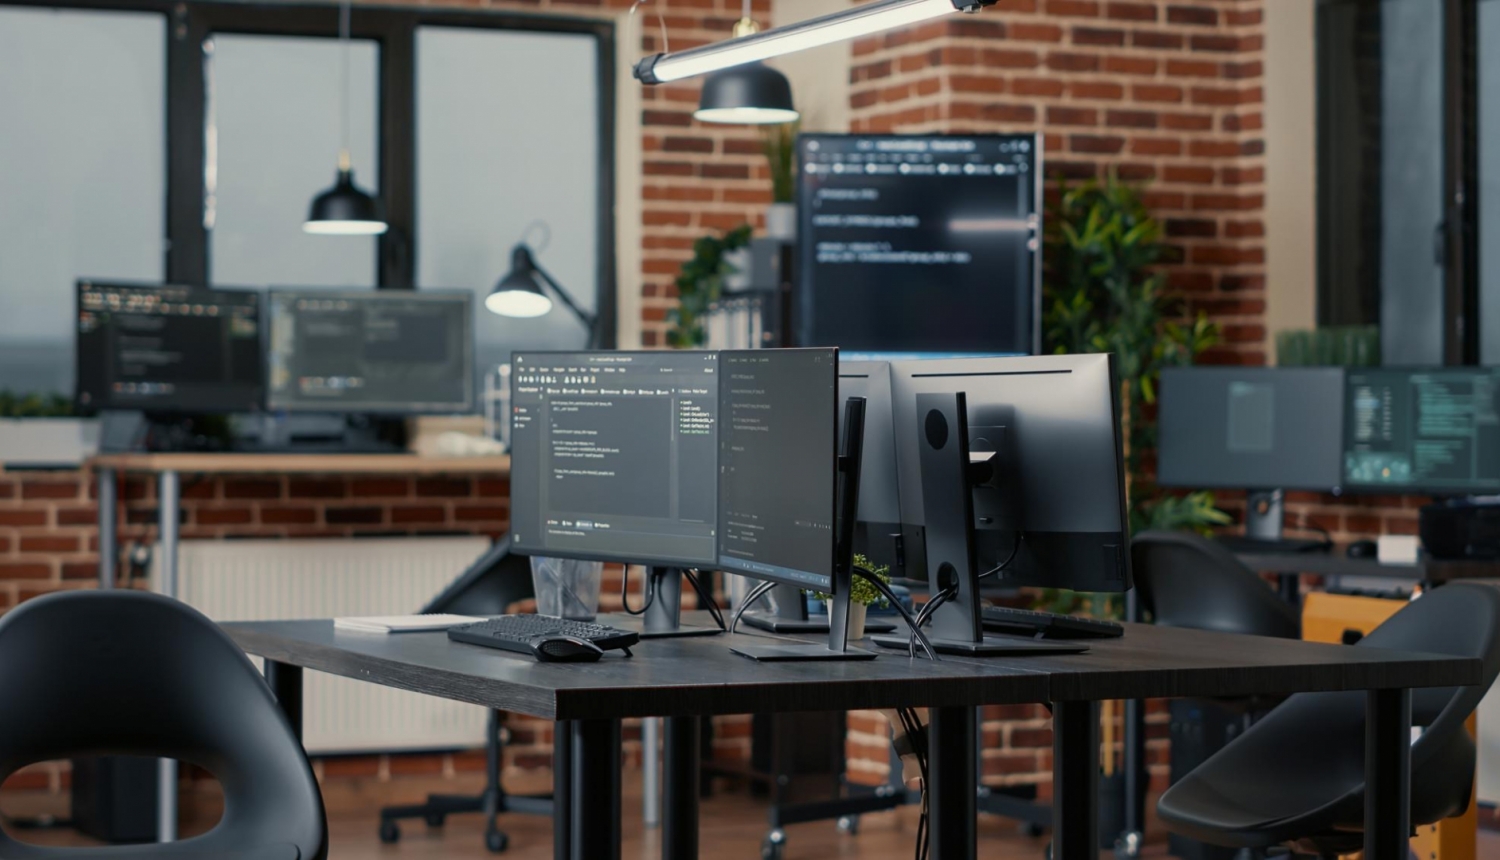 Atvērtais birojs ar datoru monitoriem uz biroja galdiem